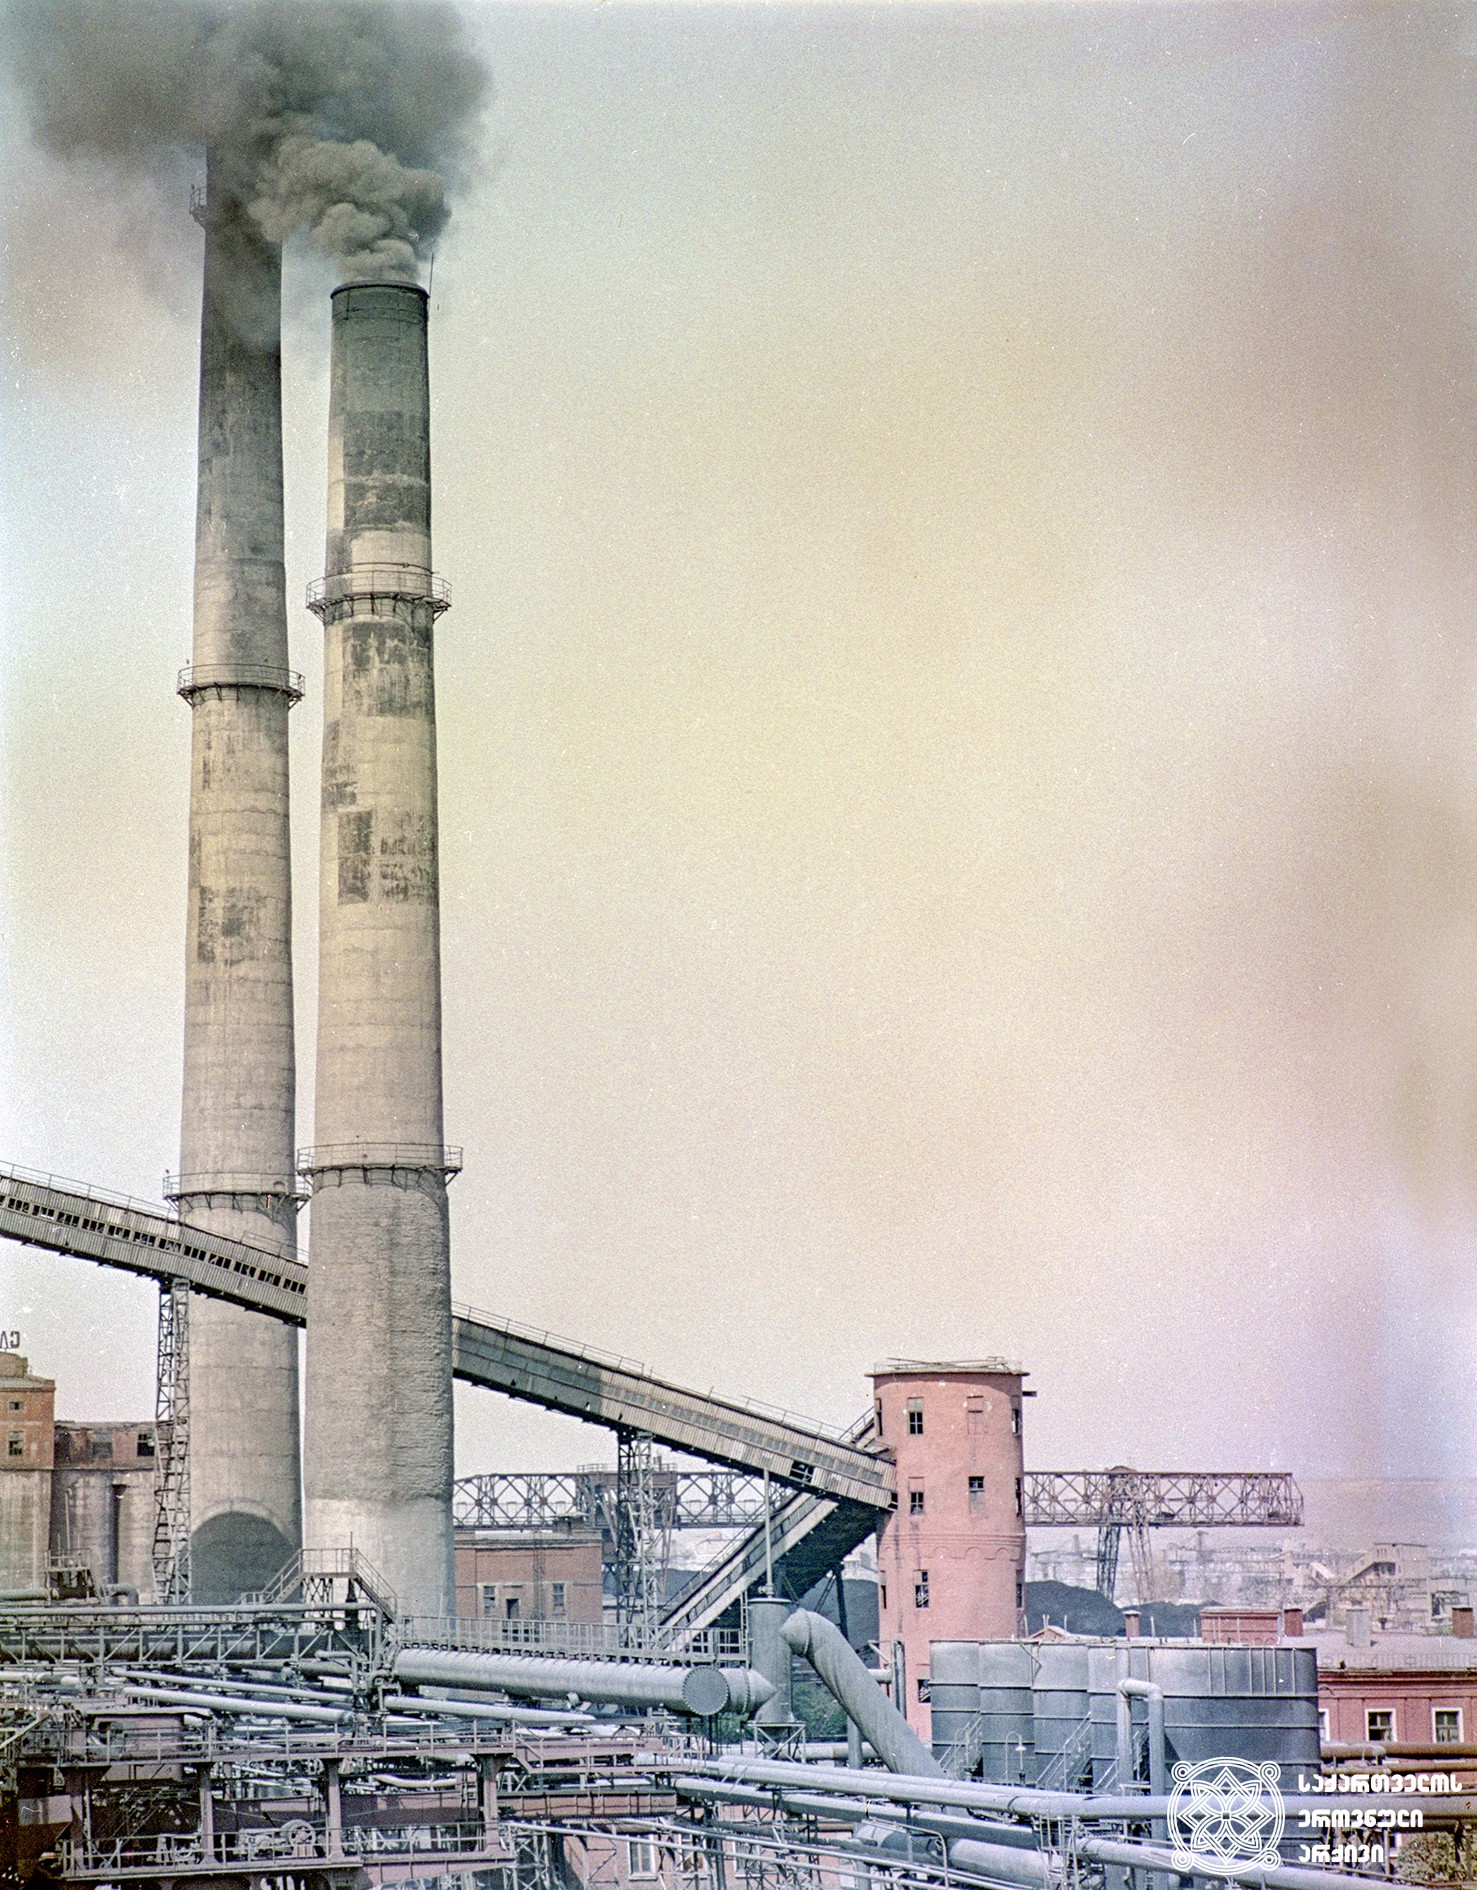 რუსთავის მეტალურგიული ქარხანა. 1971 წელი.
<br>
Rustavi metallurgical factory. 1971.